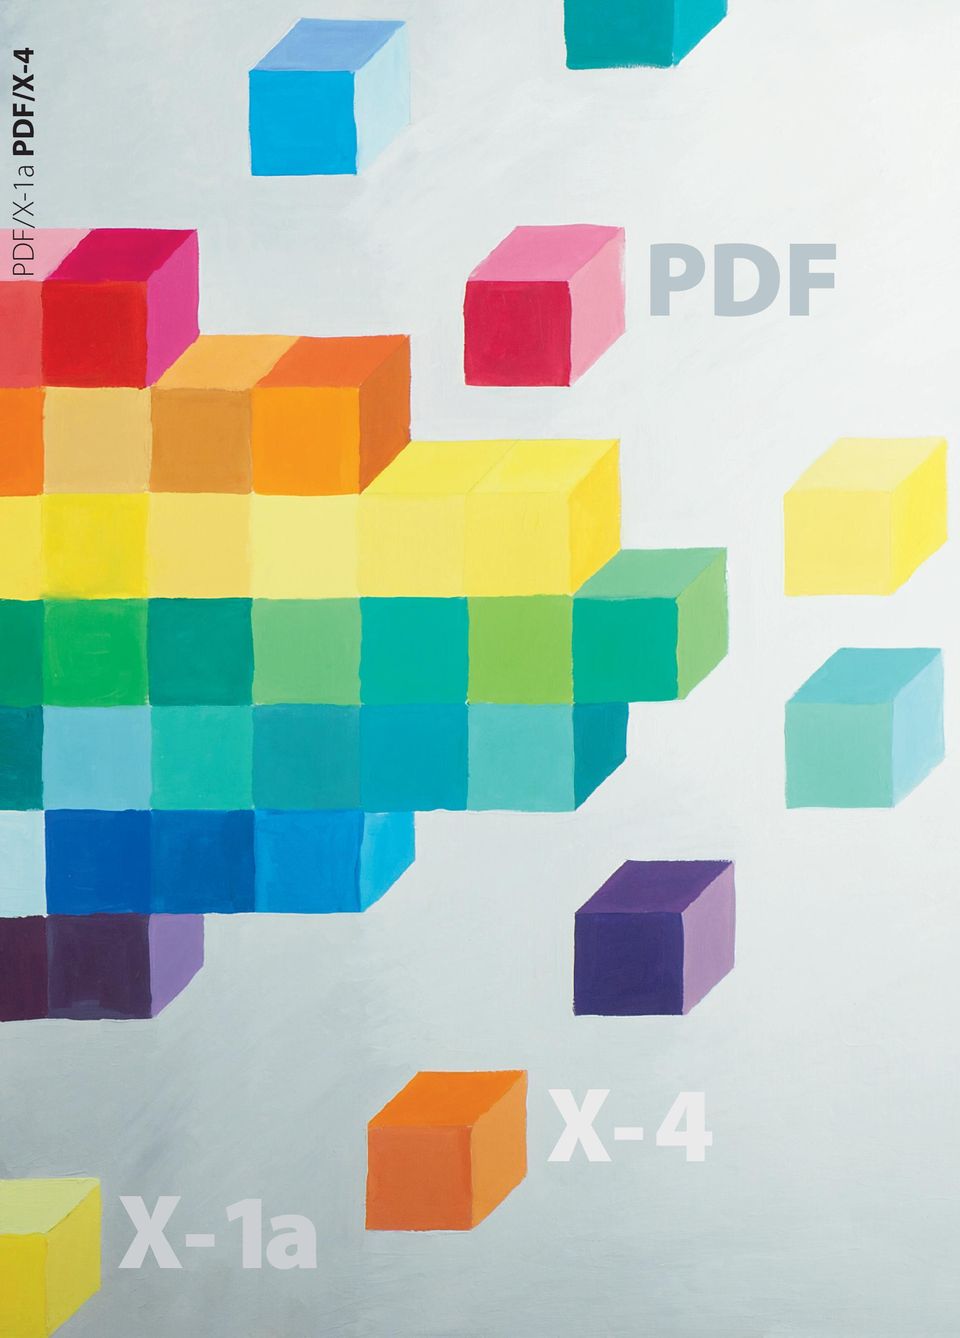 PDF X-1a